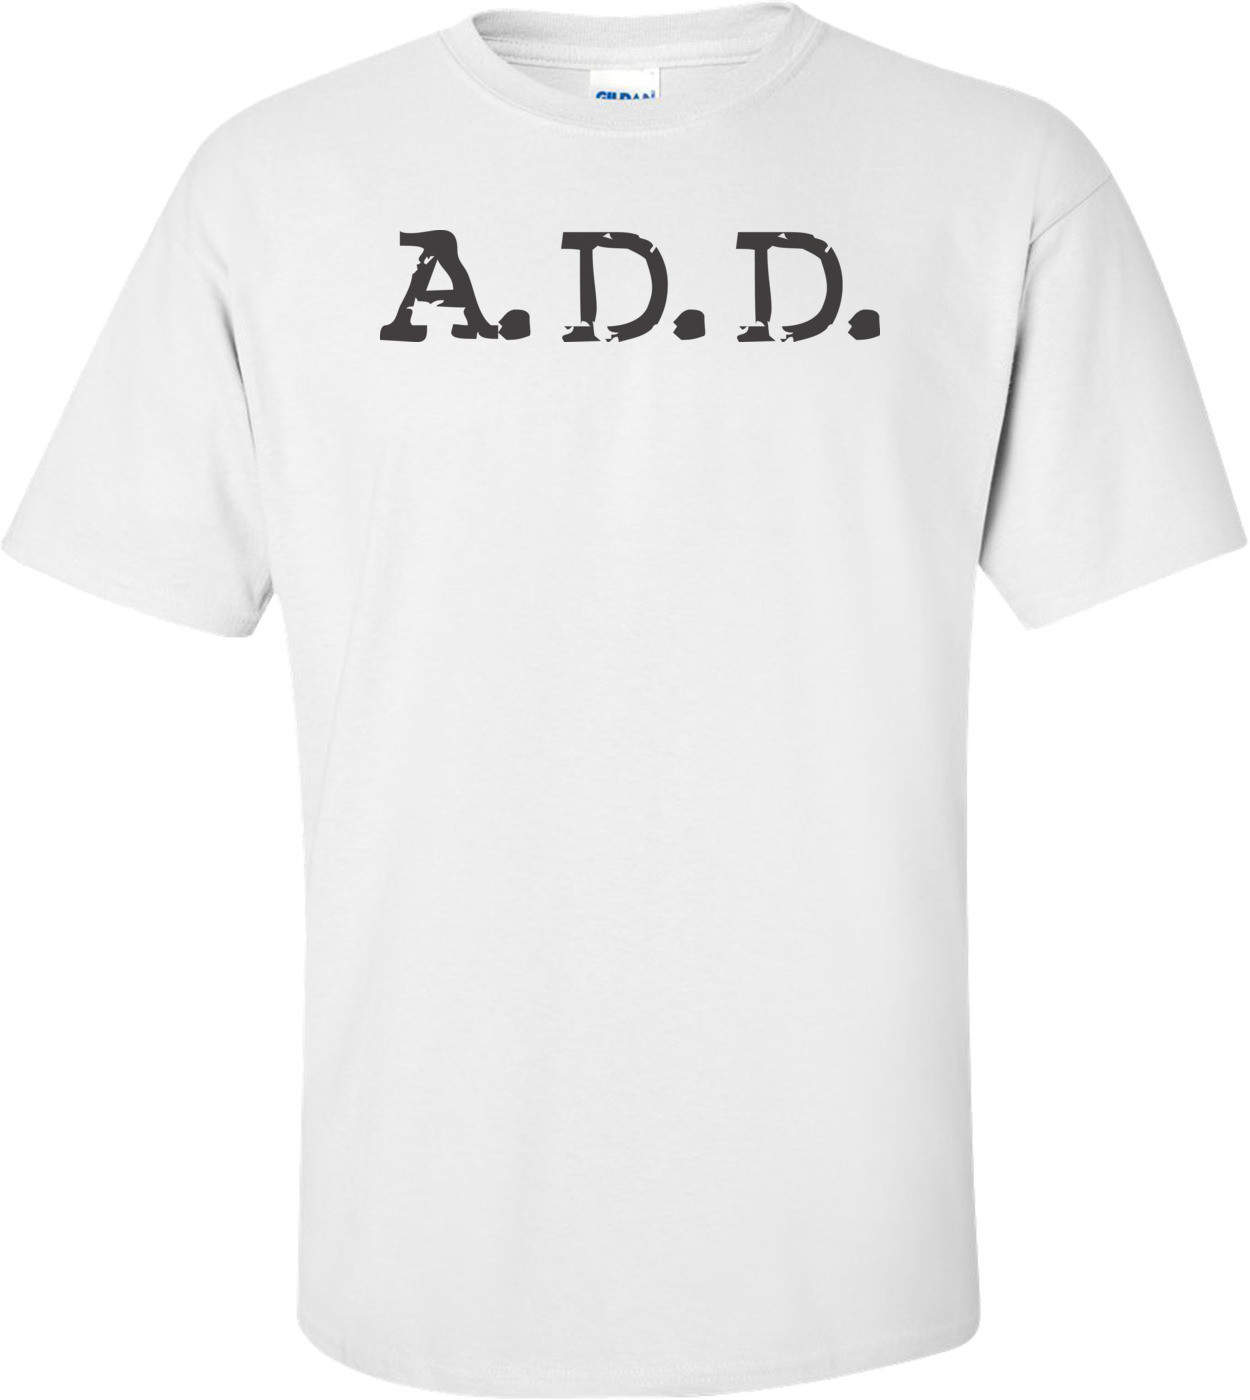 A.D.D T-shirt